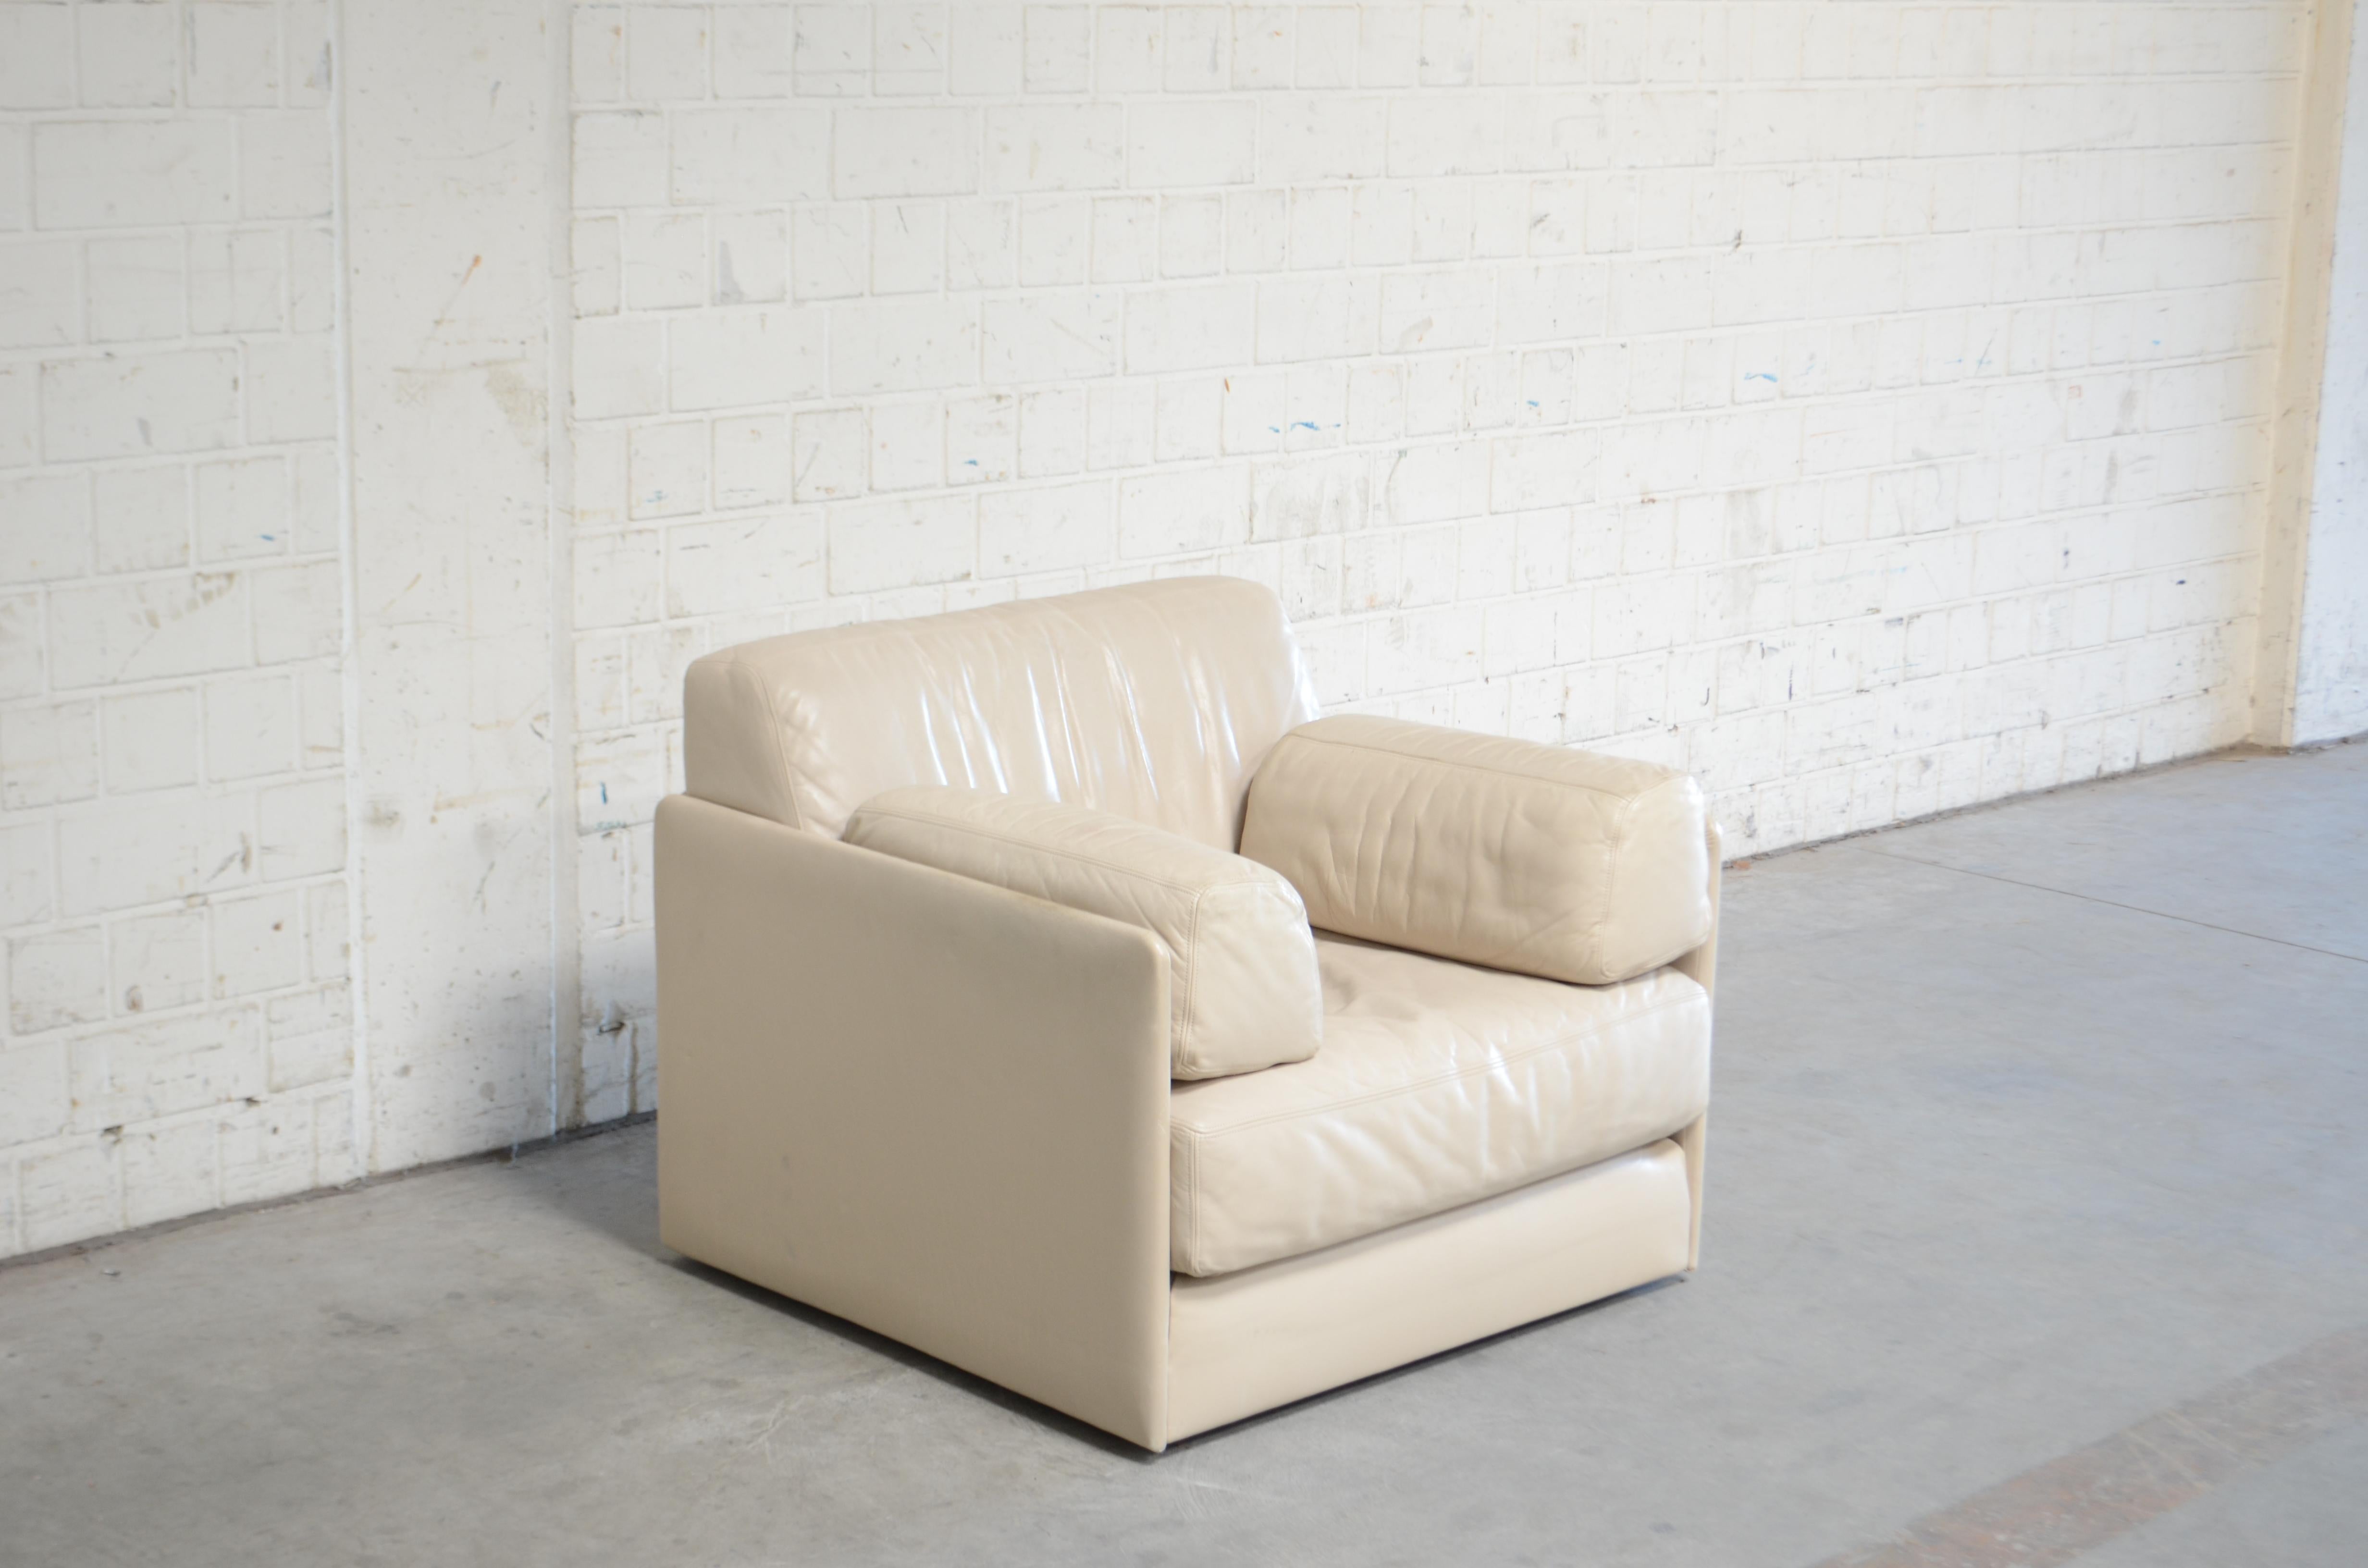 De Sede Sessel in cremeweißem Leder.
Der Stuhl kann in eine Schlafcouch für 1 Person umgewandelt werden. 
Klassisches Design aus der Schweiz.